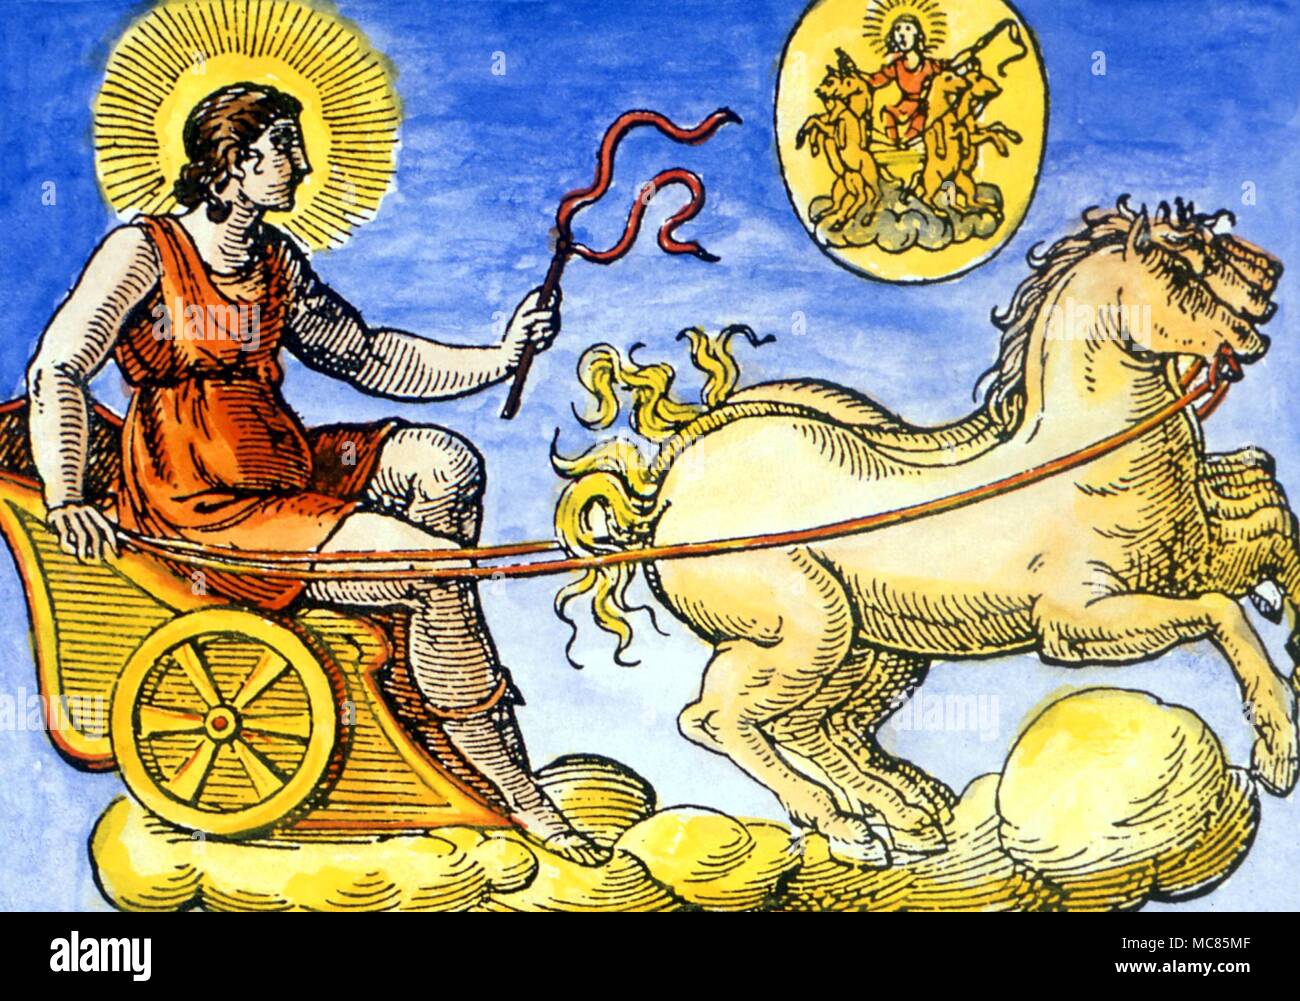 La mythologie grecque Aurora, la déesse de l'aube, dans son chariot tiré par un cheval ailé, pour porter le flambeau de la "nouvelle lumière". De Natalia Comitis, 'Mythologiae, Lib. V', édition du 17e siècle Collection privée. Banque D'Images